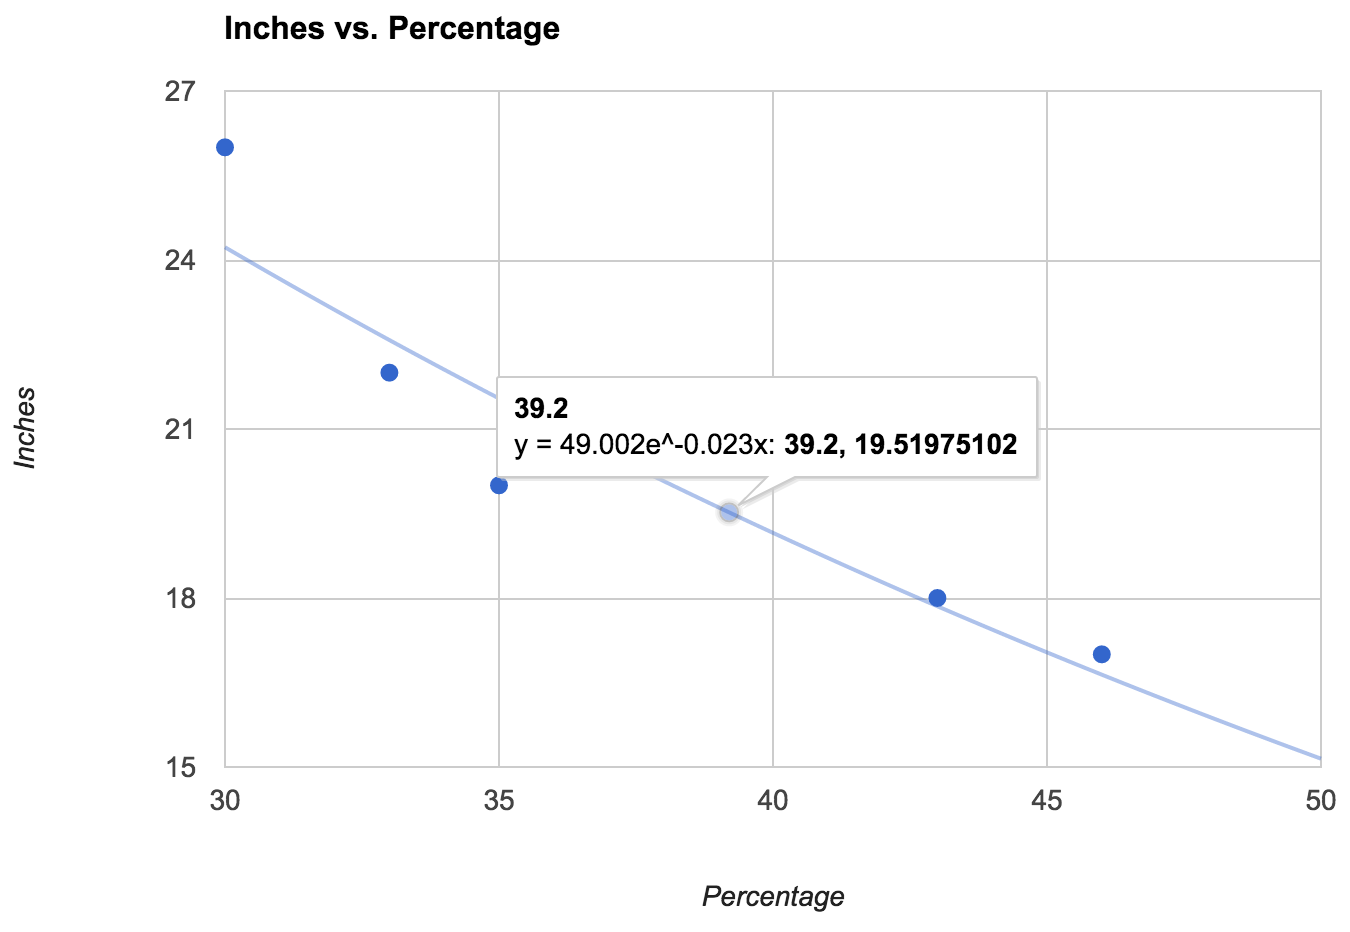 Inches versus Percentage